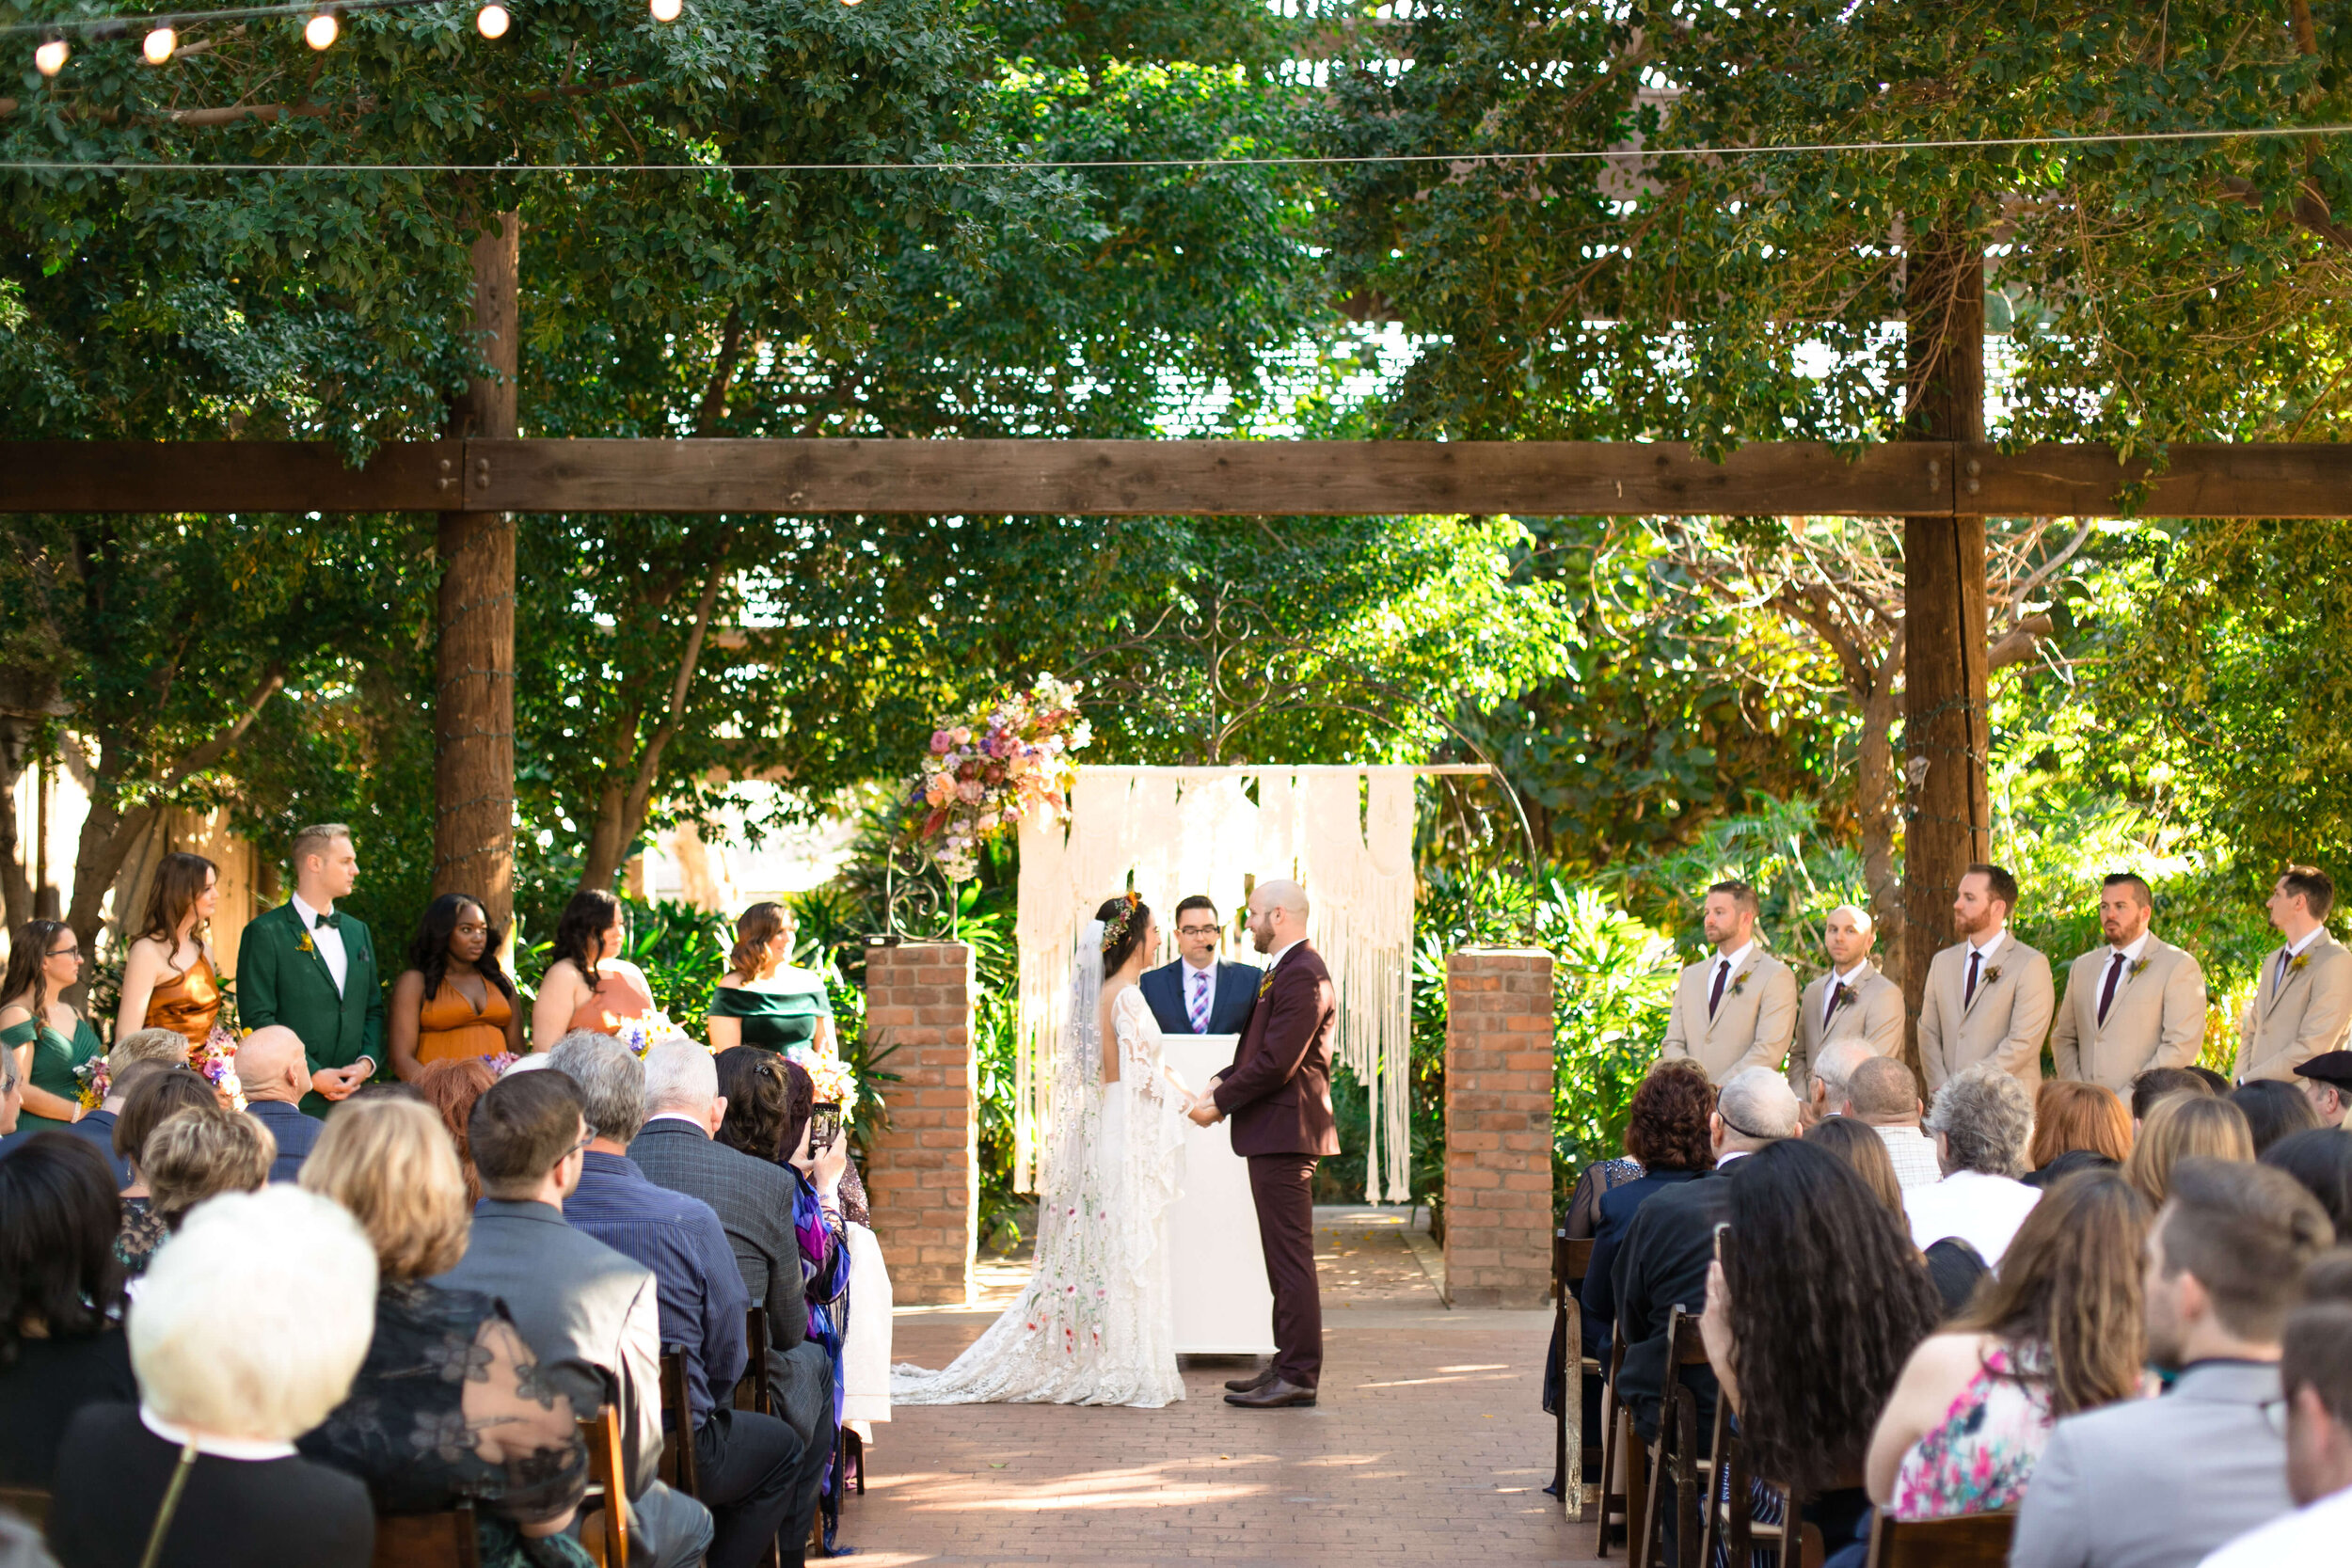 Wedding ceremony at Heritage Square in Phoenix, Arizona